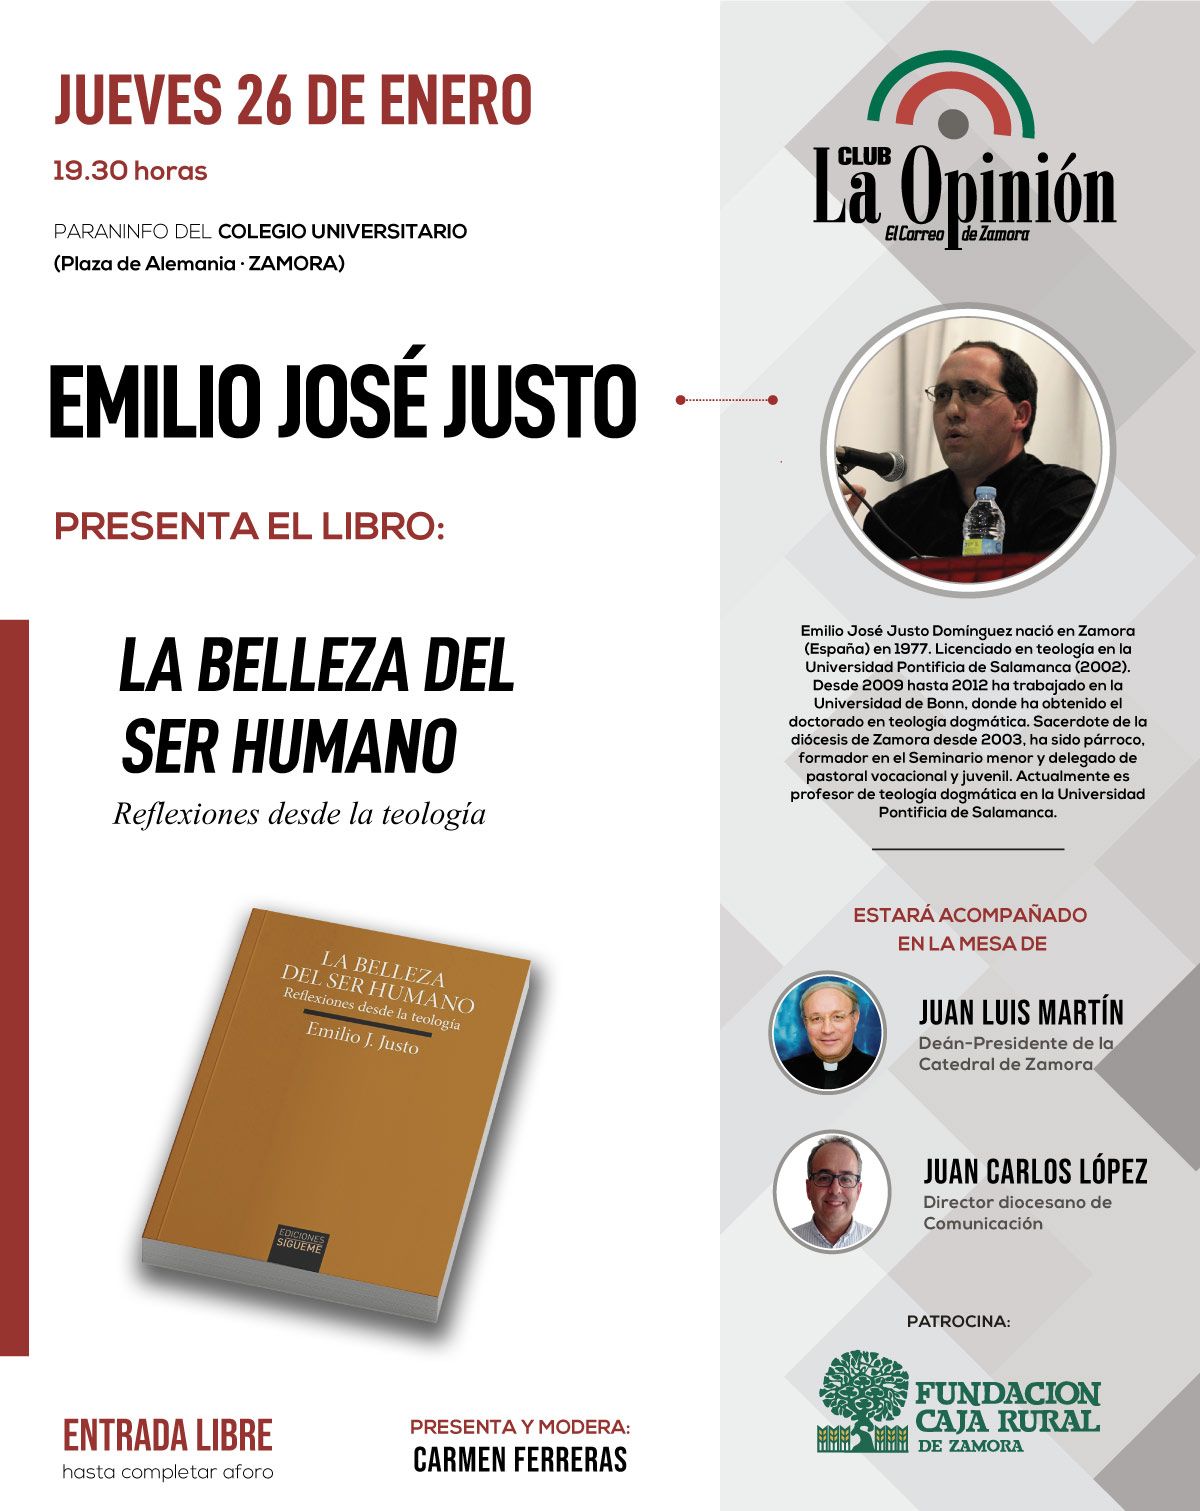 Club La Opinión - Emilio José Justo